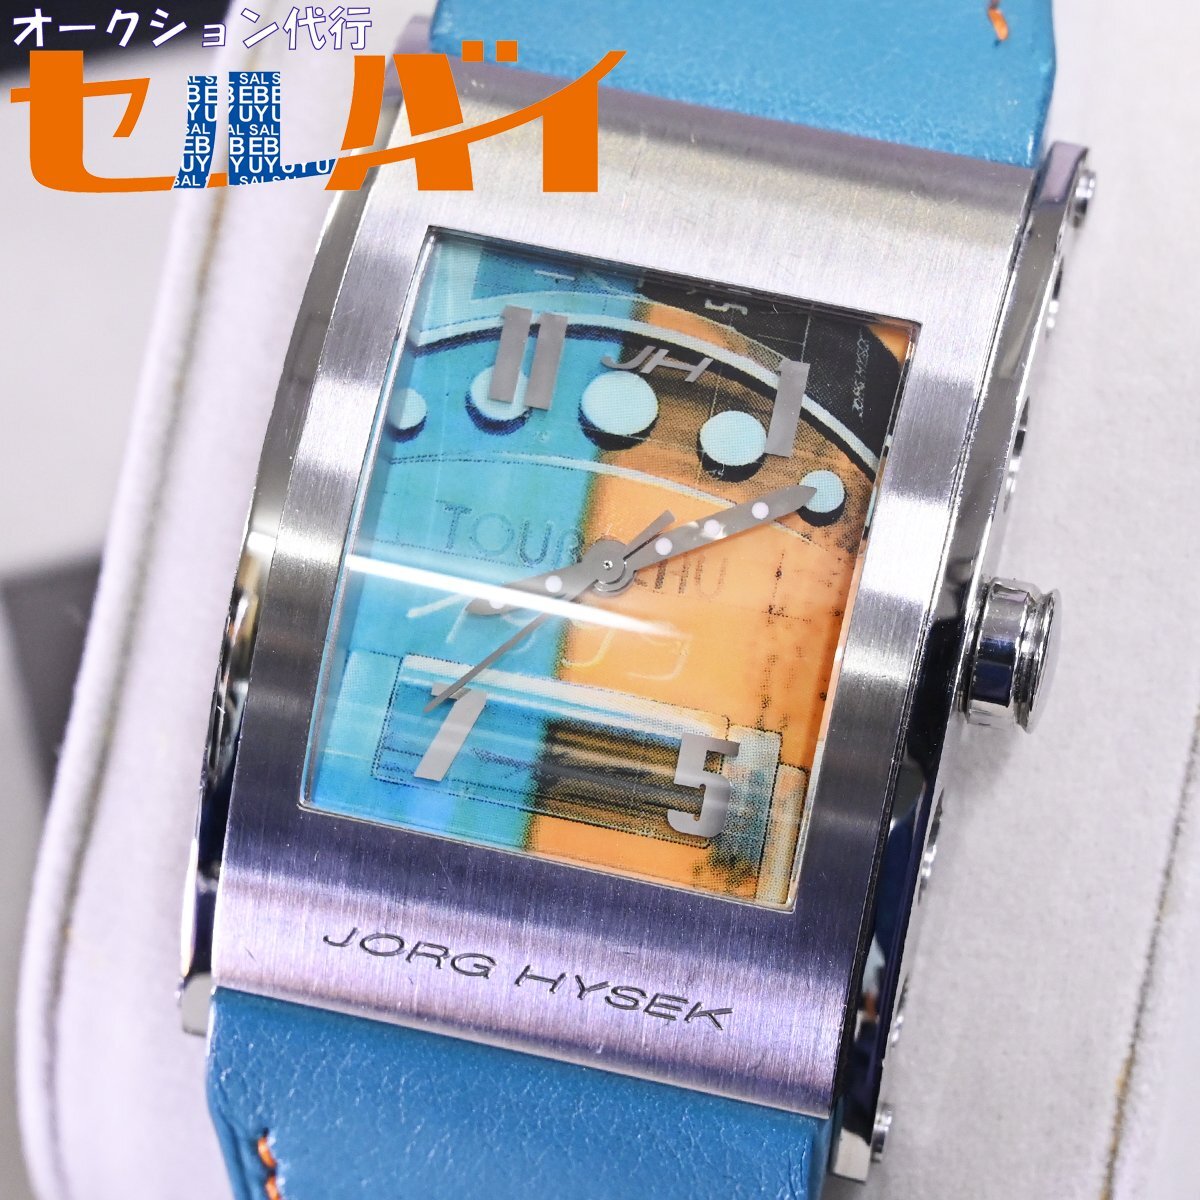 本物 超美品 ヨルグイゼック 世界25本限定 リミテッドエディション オートマチック メンズウォッチ 紳士自動巻腕時計 箱 保証書 JORG HYSEKの画像1